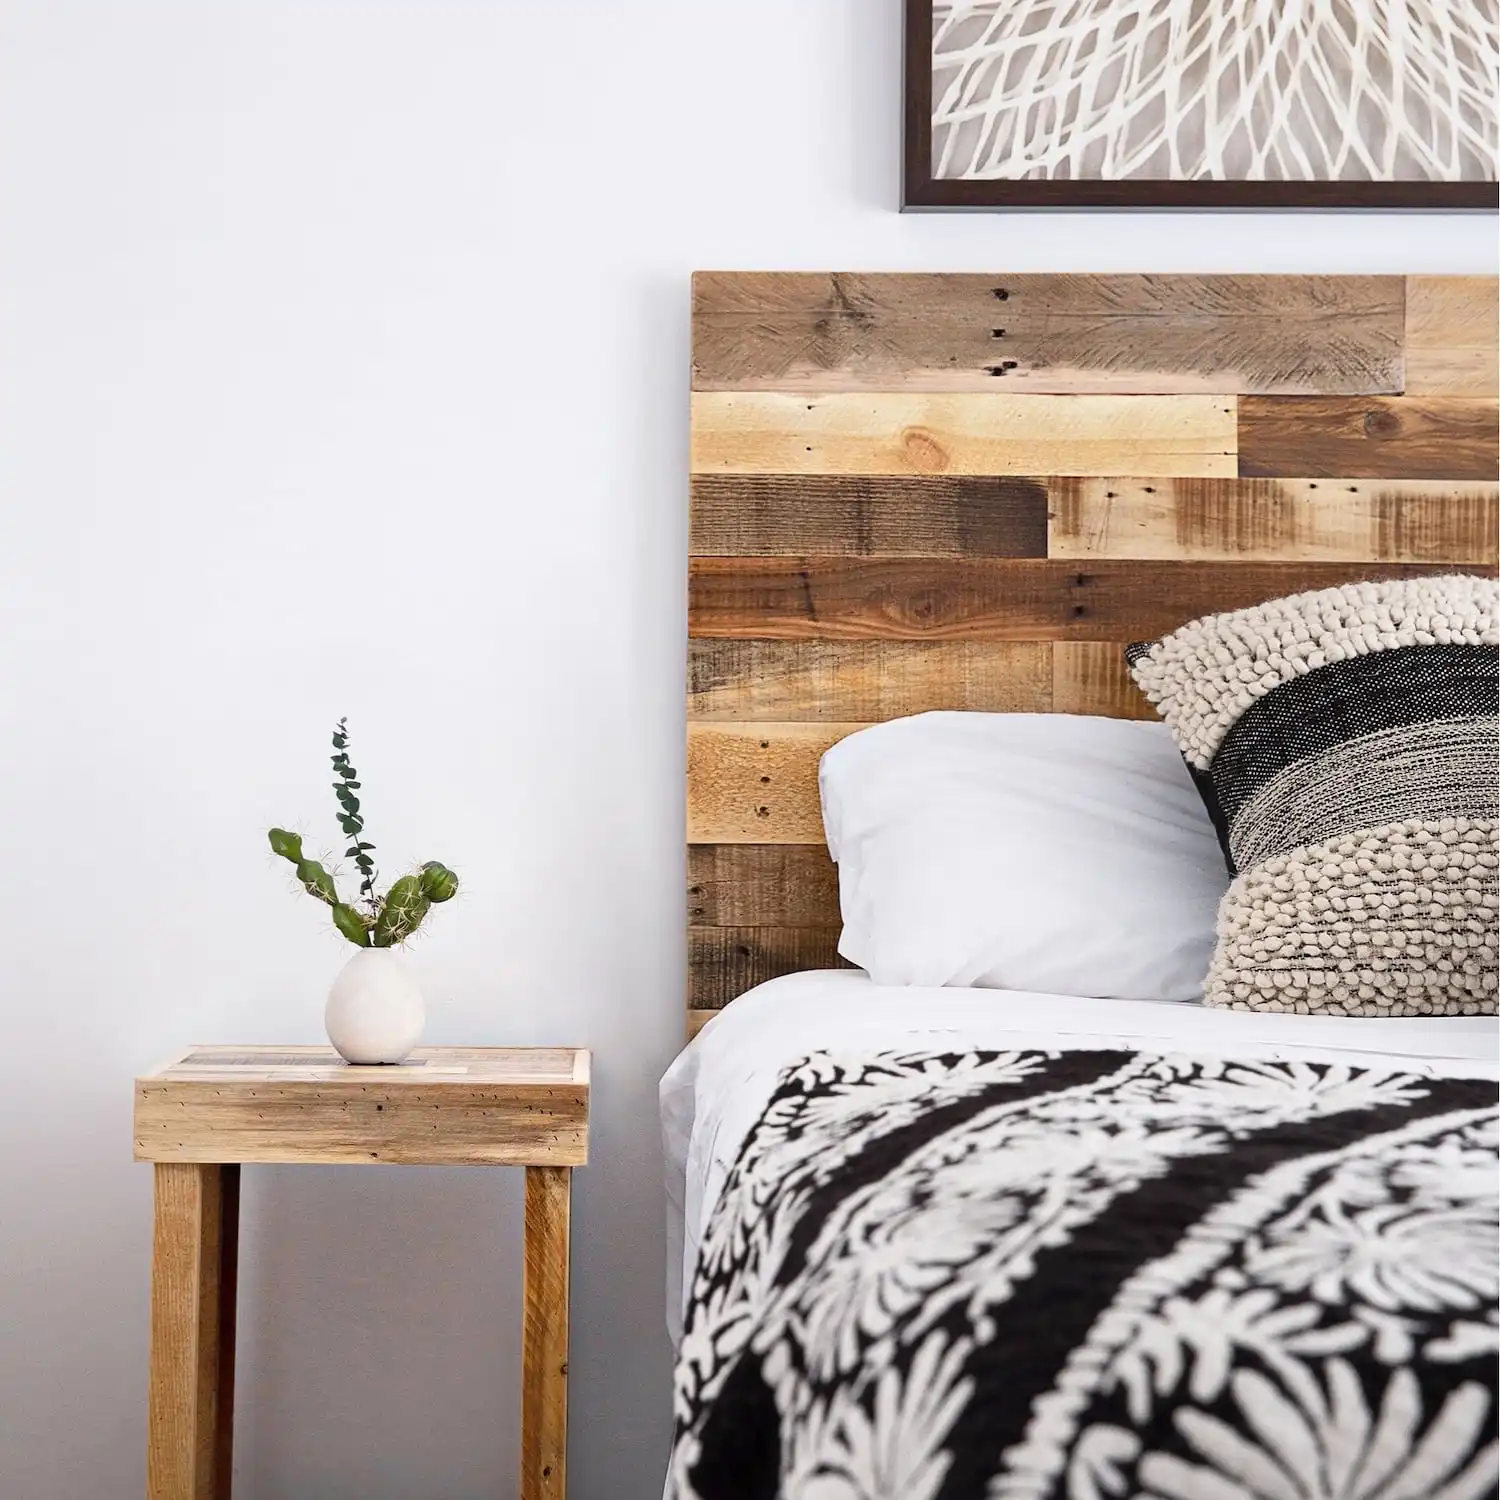  Un coin chambre douillet avec une tête de lit en bois ancien, une literie à motifs et une petite table de nuit avec une plante. 